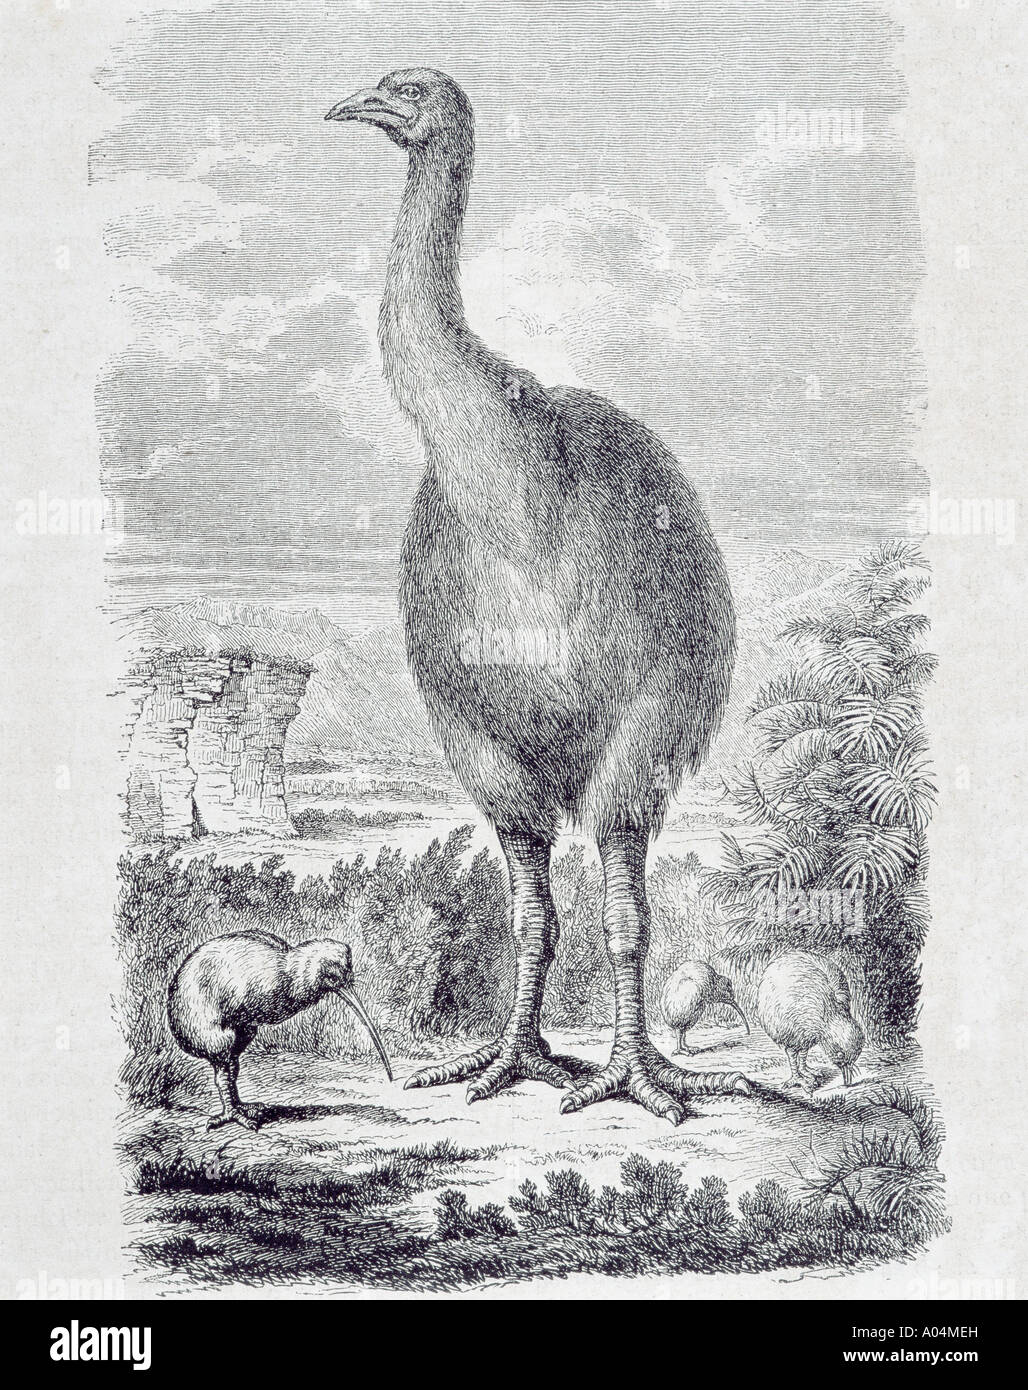 Kiwis ist das nationale Emblem Neuseelands und des erloschenen Moa, das aus dem 19. Jahrhundert stammt. Stockfoto